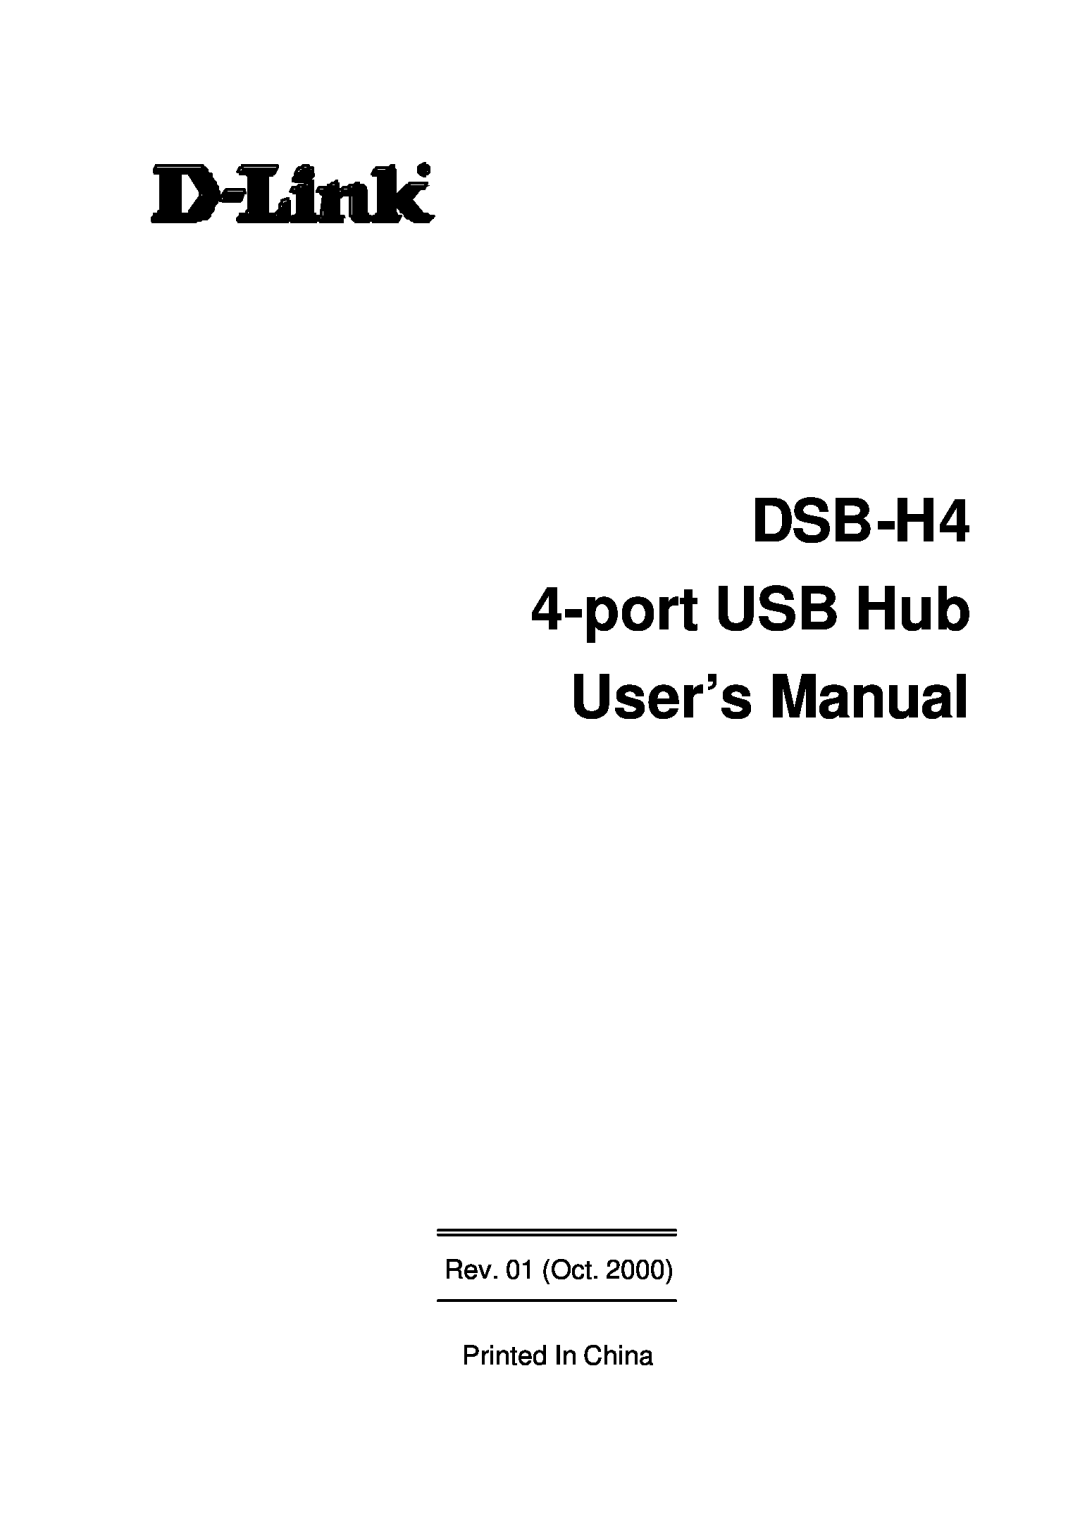 D-Link user manual DSB-H4 4-port USB Hub User’s Manual, Rev. 01 Oct Printed In China 